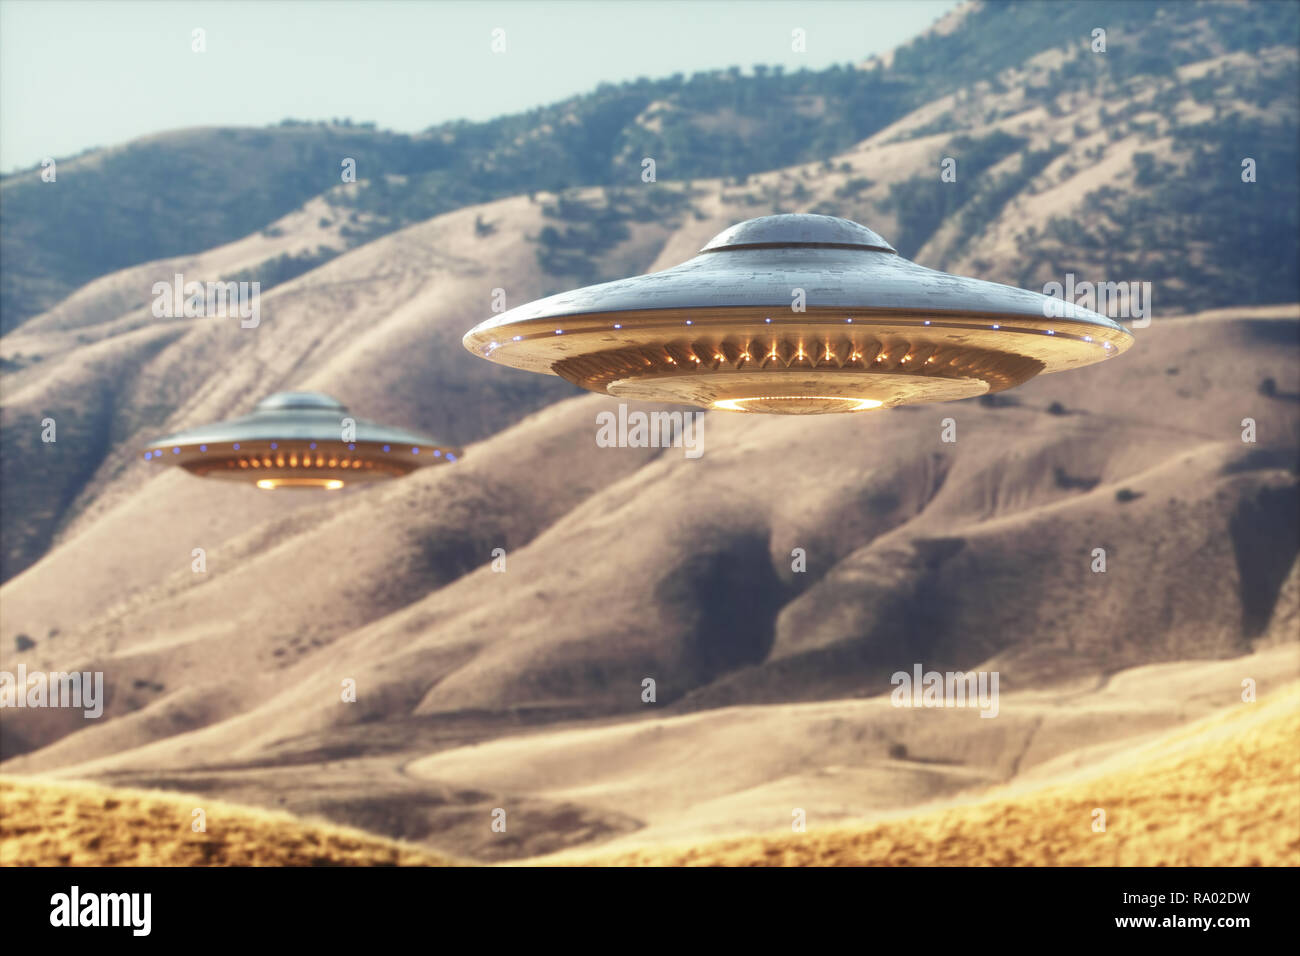 Deux objets volants non identifiés - OVNIS, survolant le désert ensoleillé. Banque D'Images